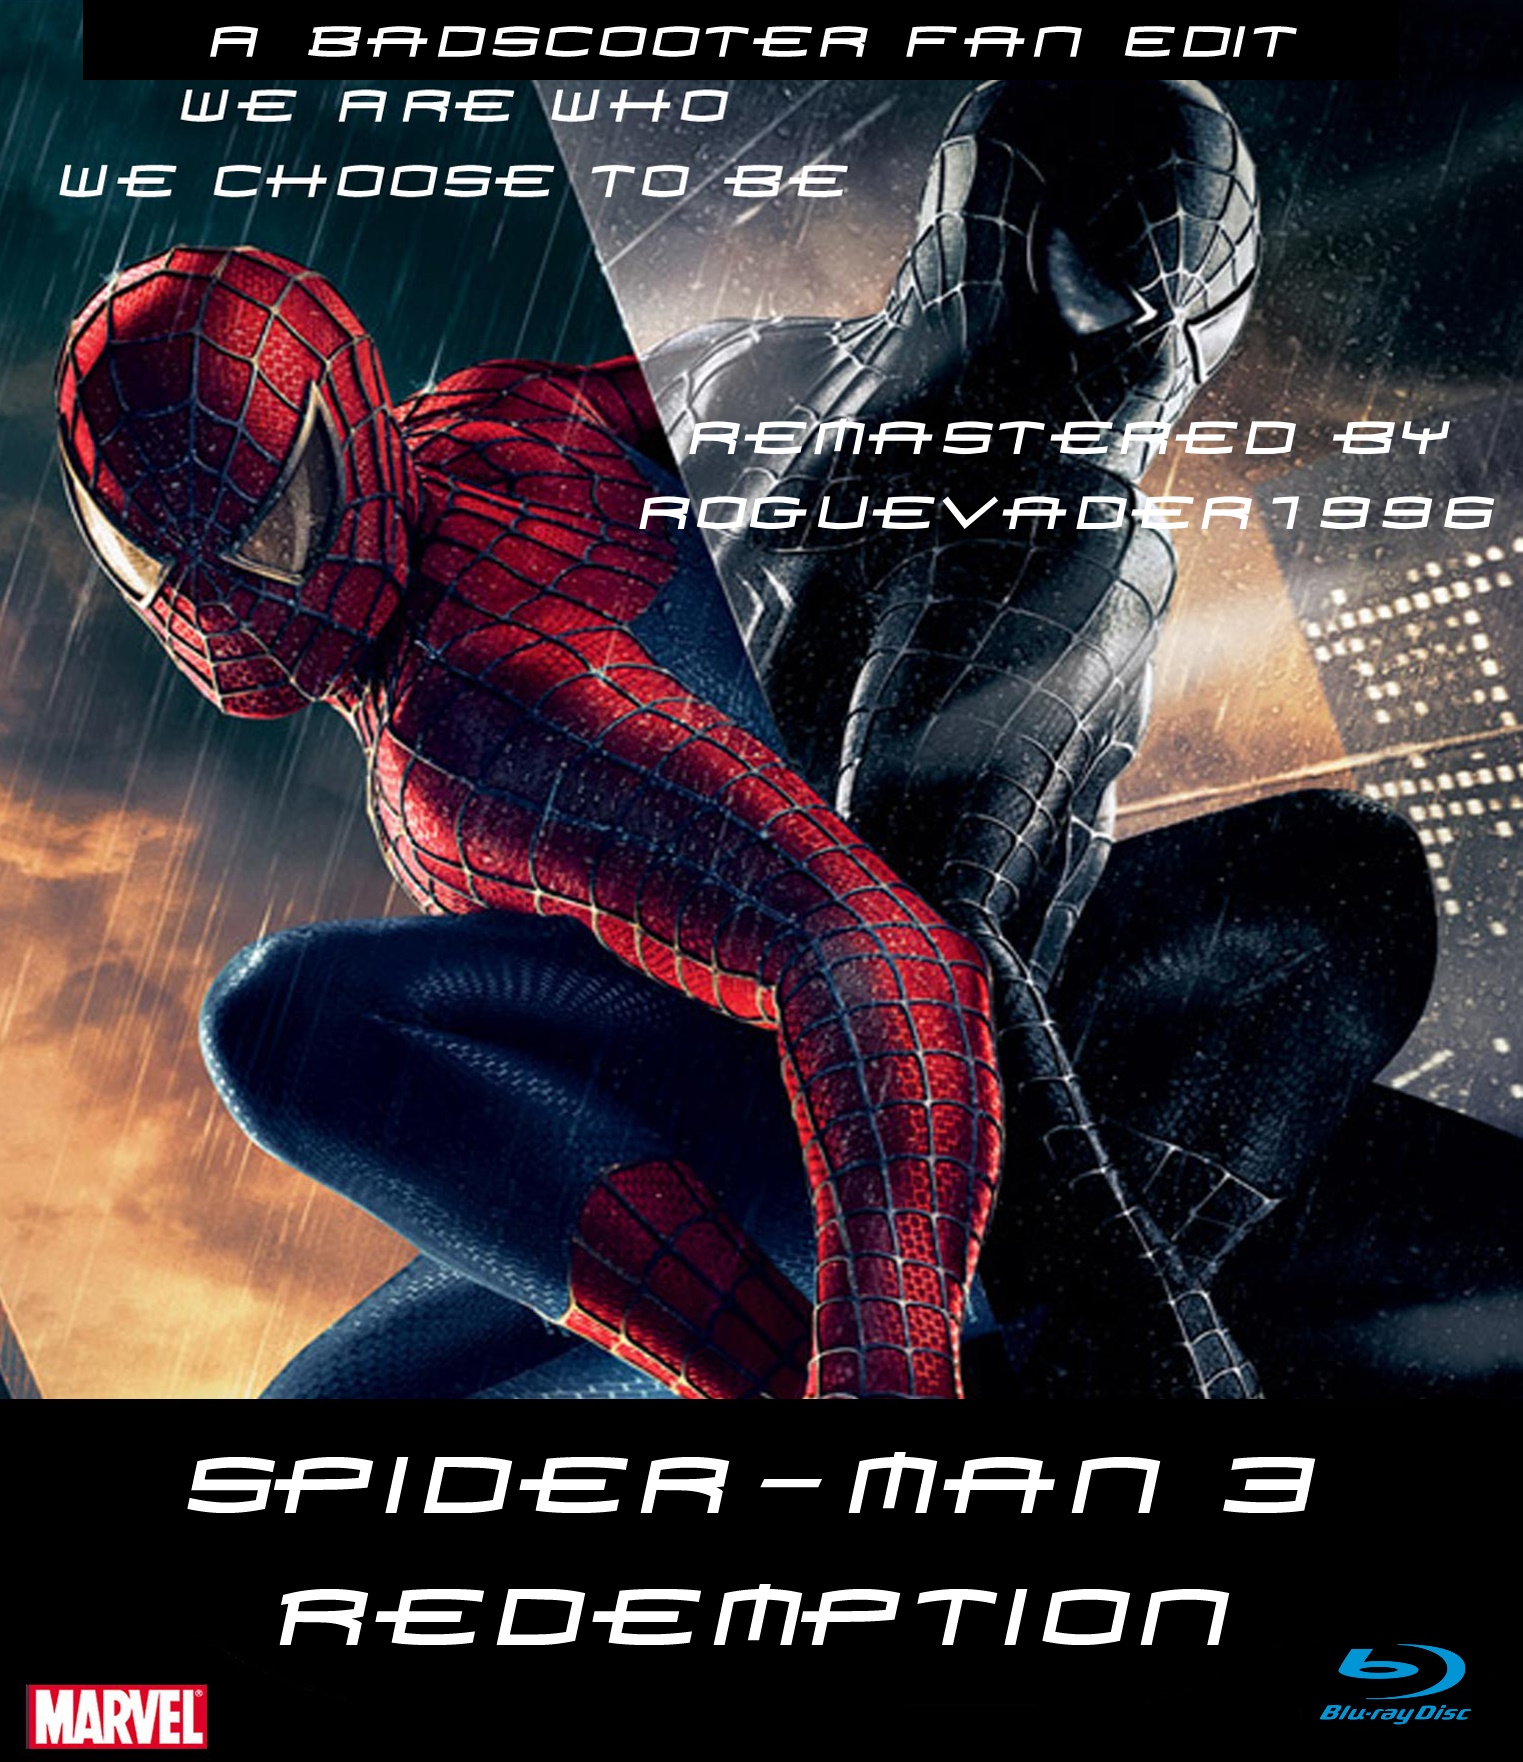 Spider-Man™ 3 Redemption remastered.jpg